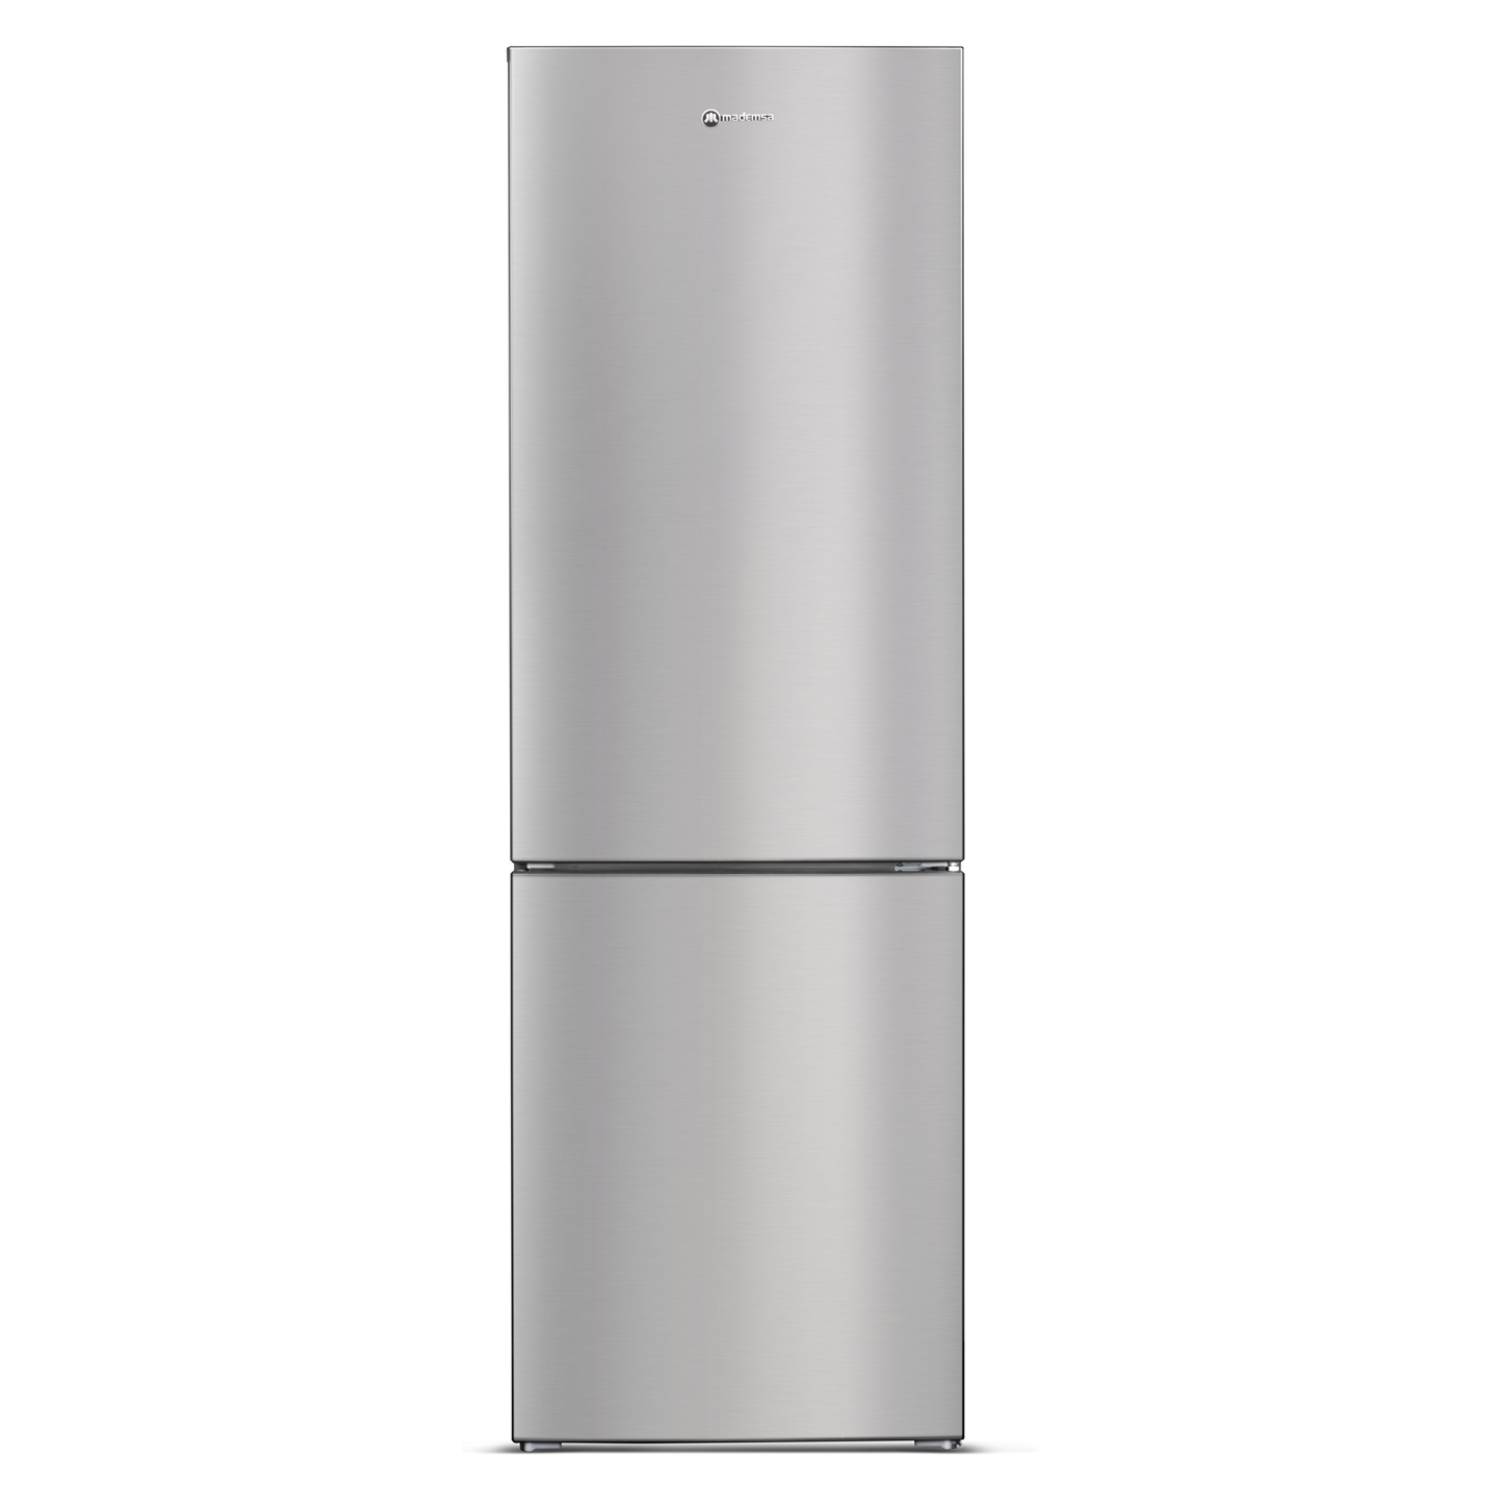 Mademsa Refrigerador Bottom Freezer 303 Lt Nordik 480 Plus Falabella Com